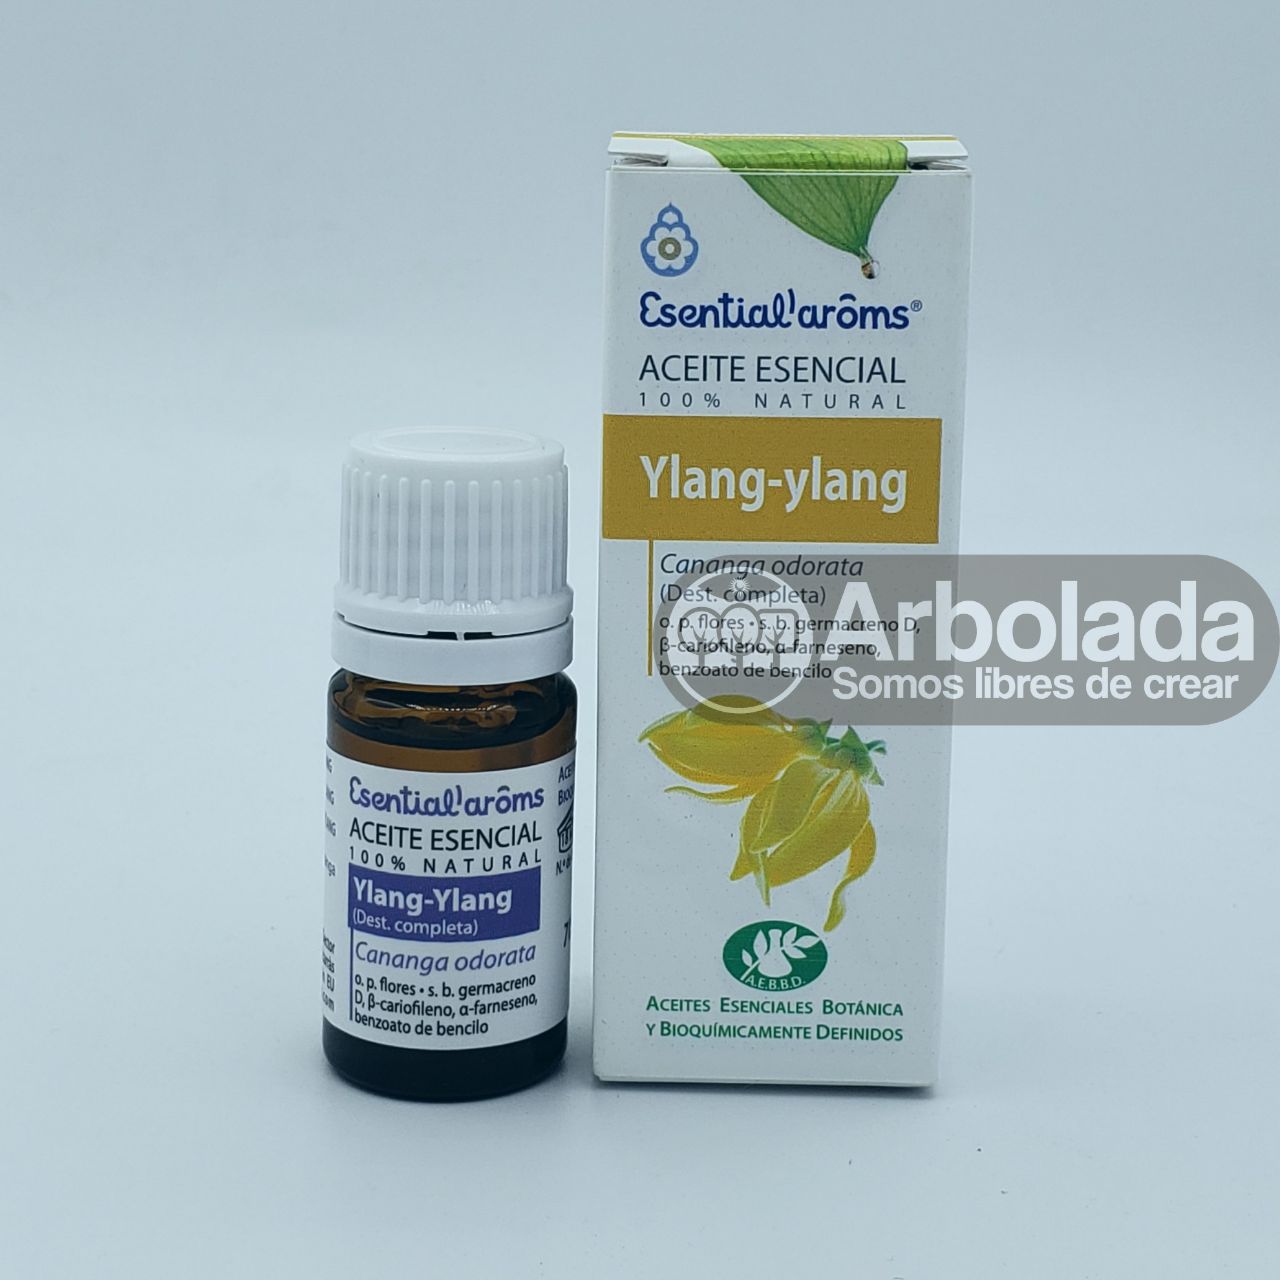 AE - Ylang Ylang Esential aroms - 5ml